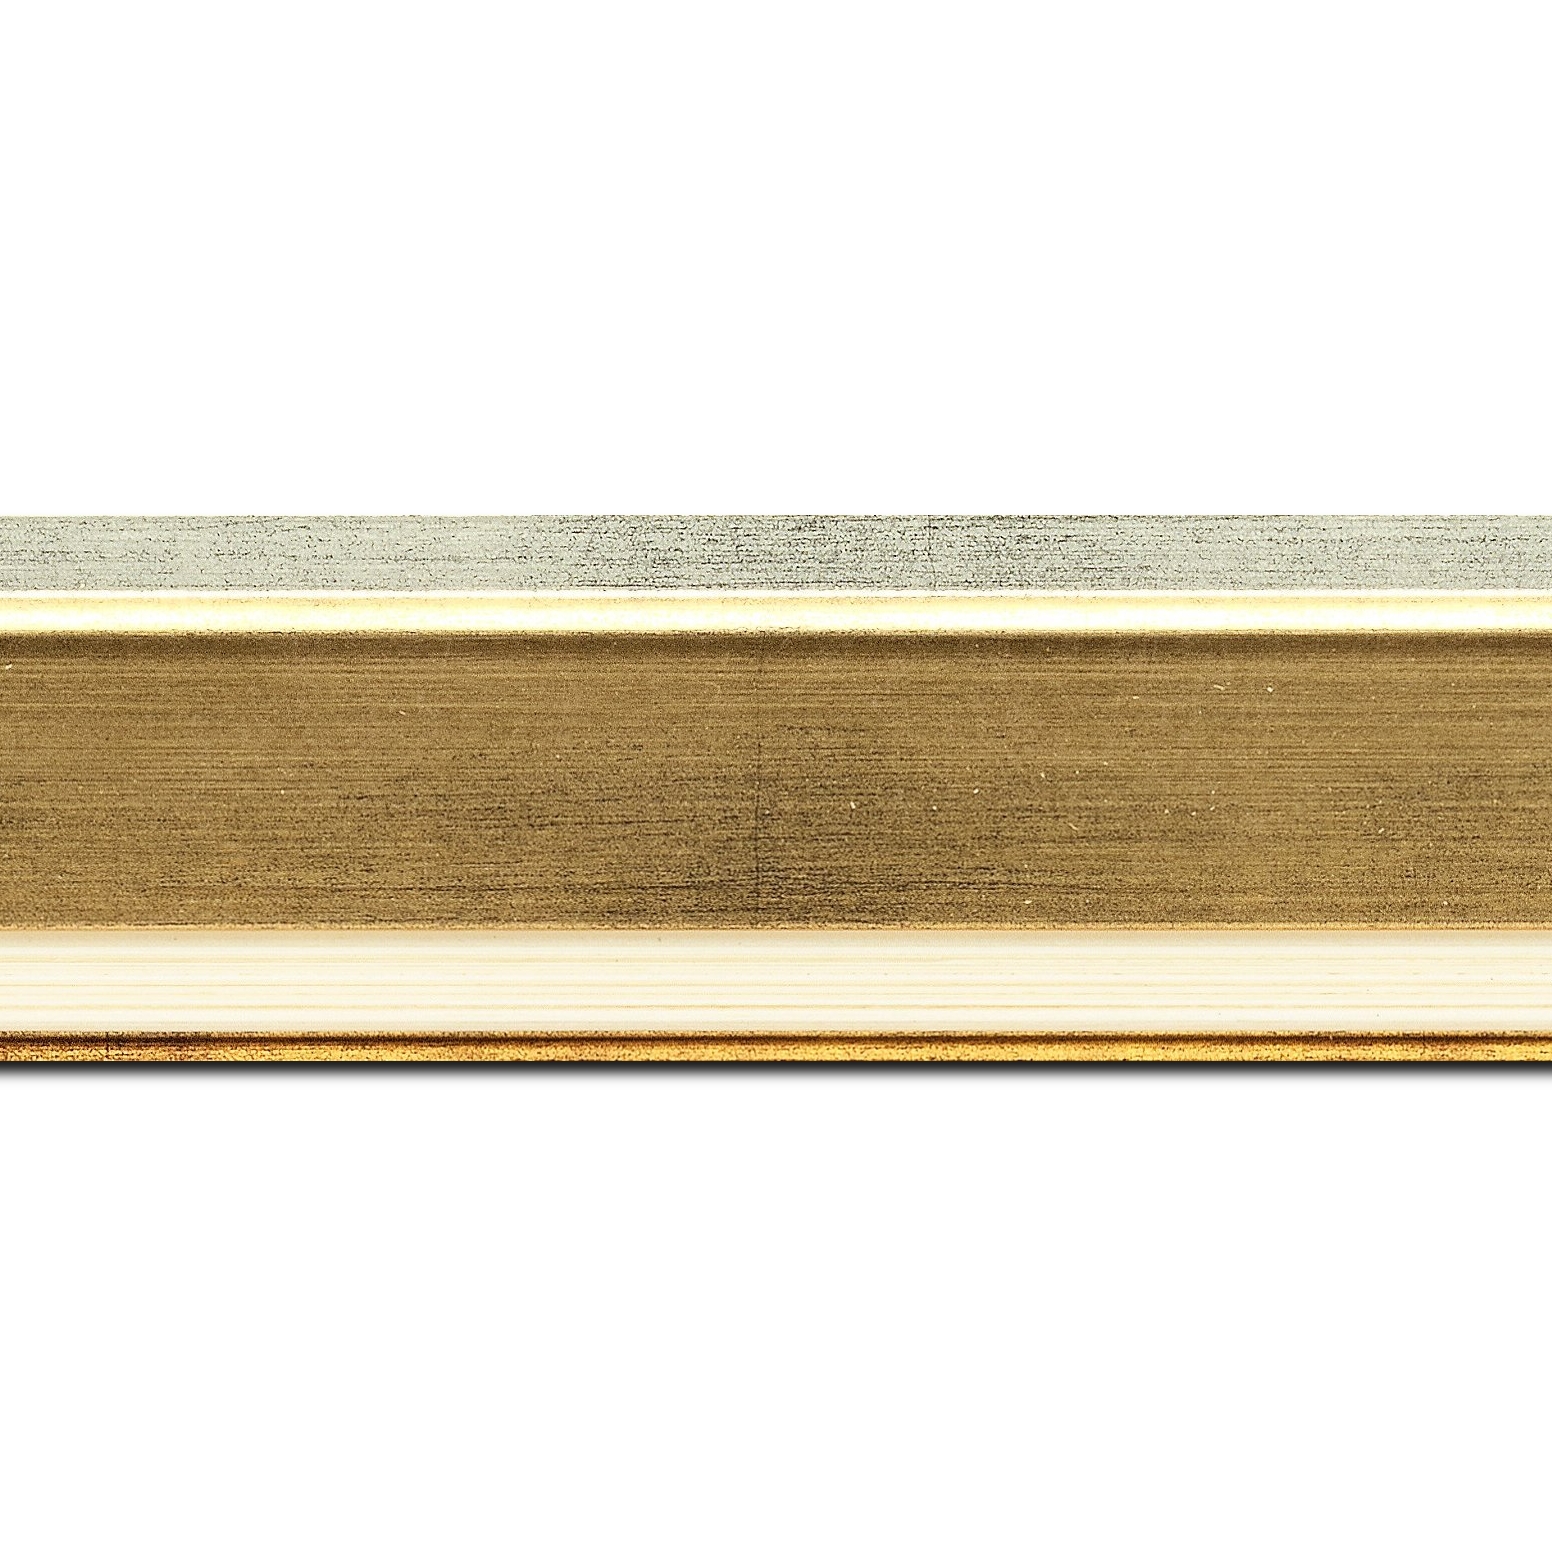 Baguette longueur 1.40m bois profil incliné largeur 5.4cm or bord extérieur argent marie louise crème filet argent intégrée